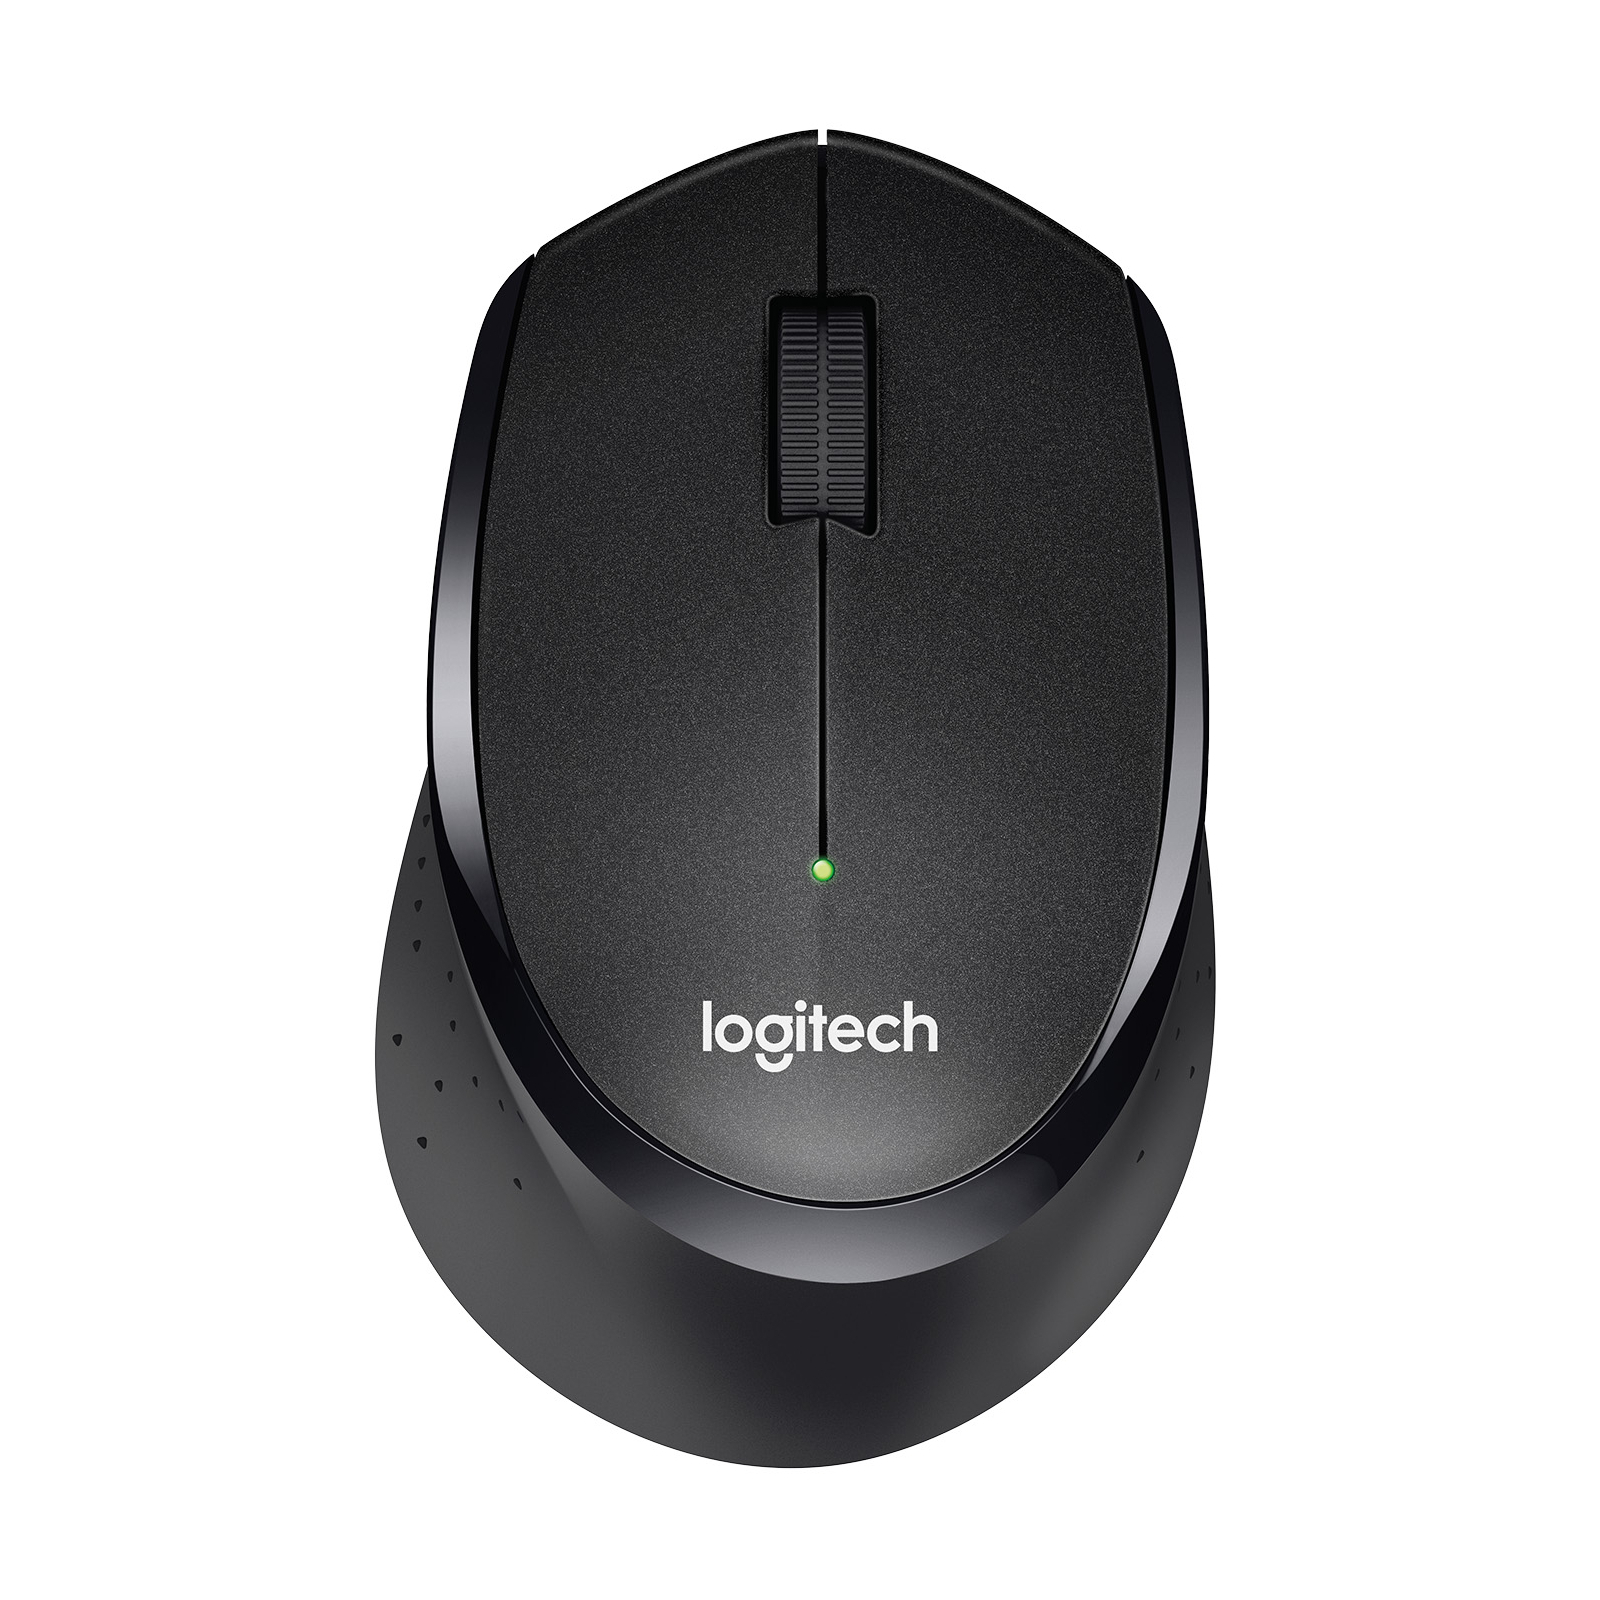 Мышка Logitech B330 Silent plus Black (910-004913)